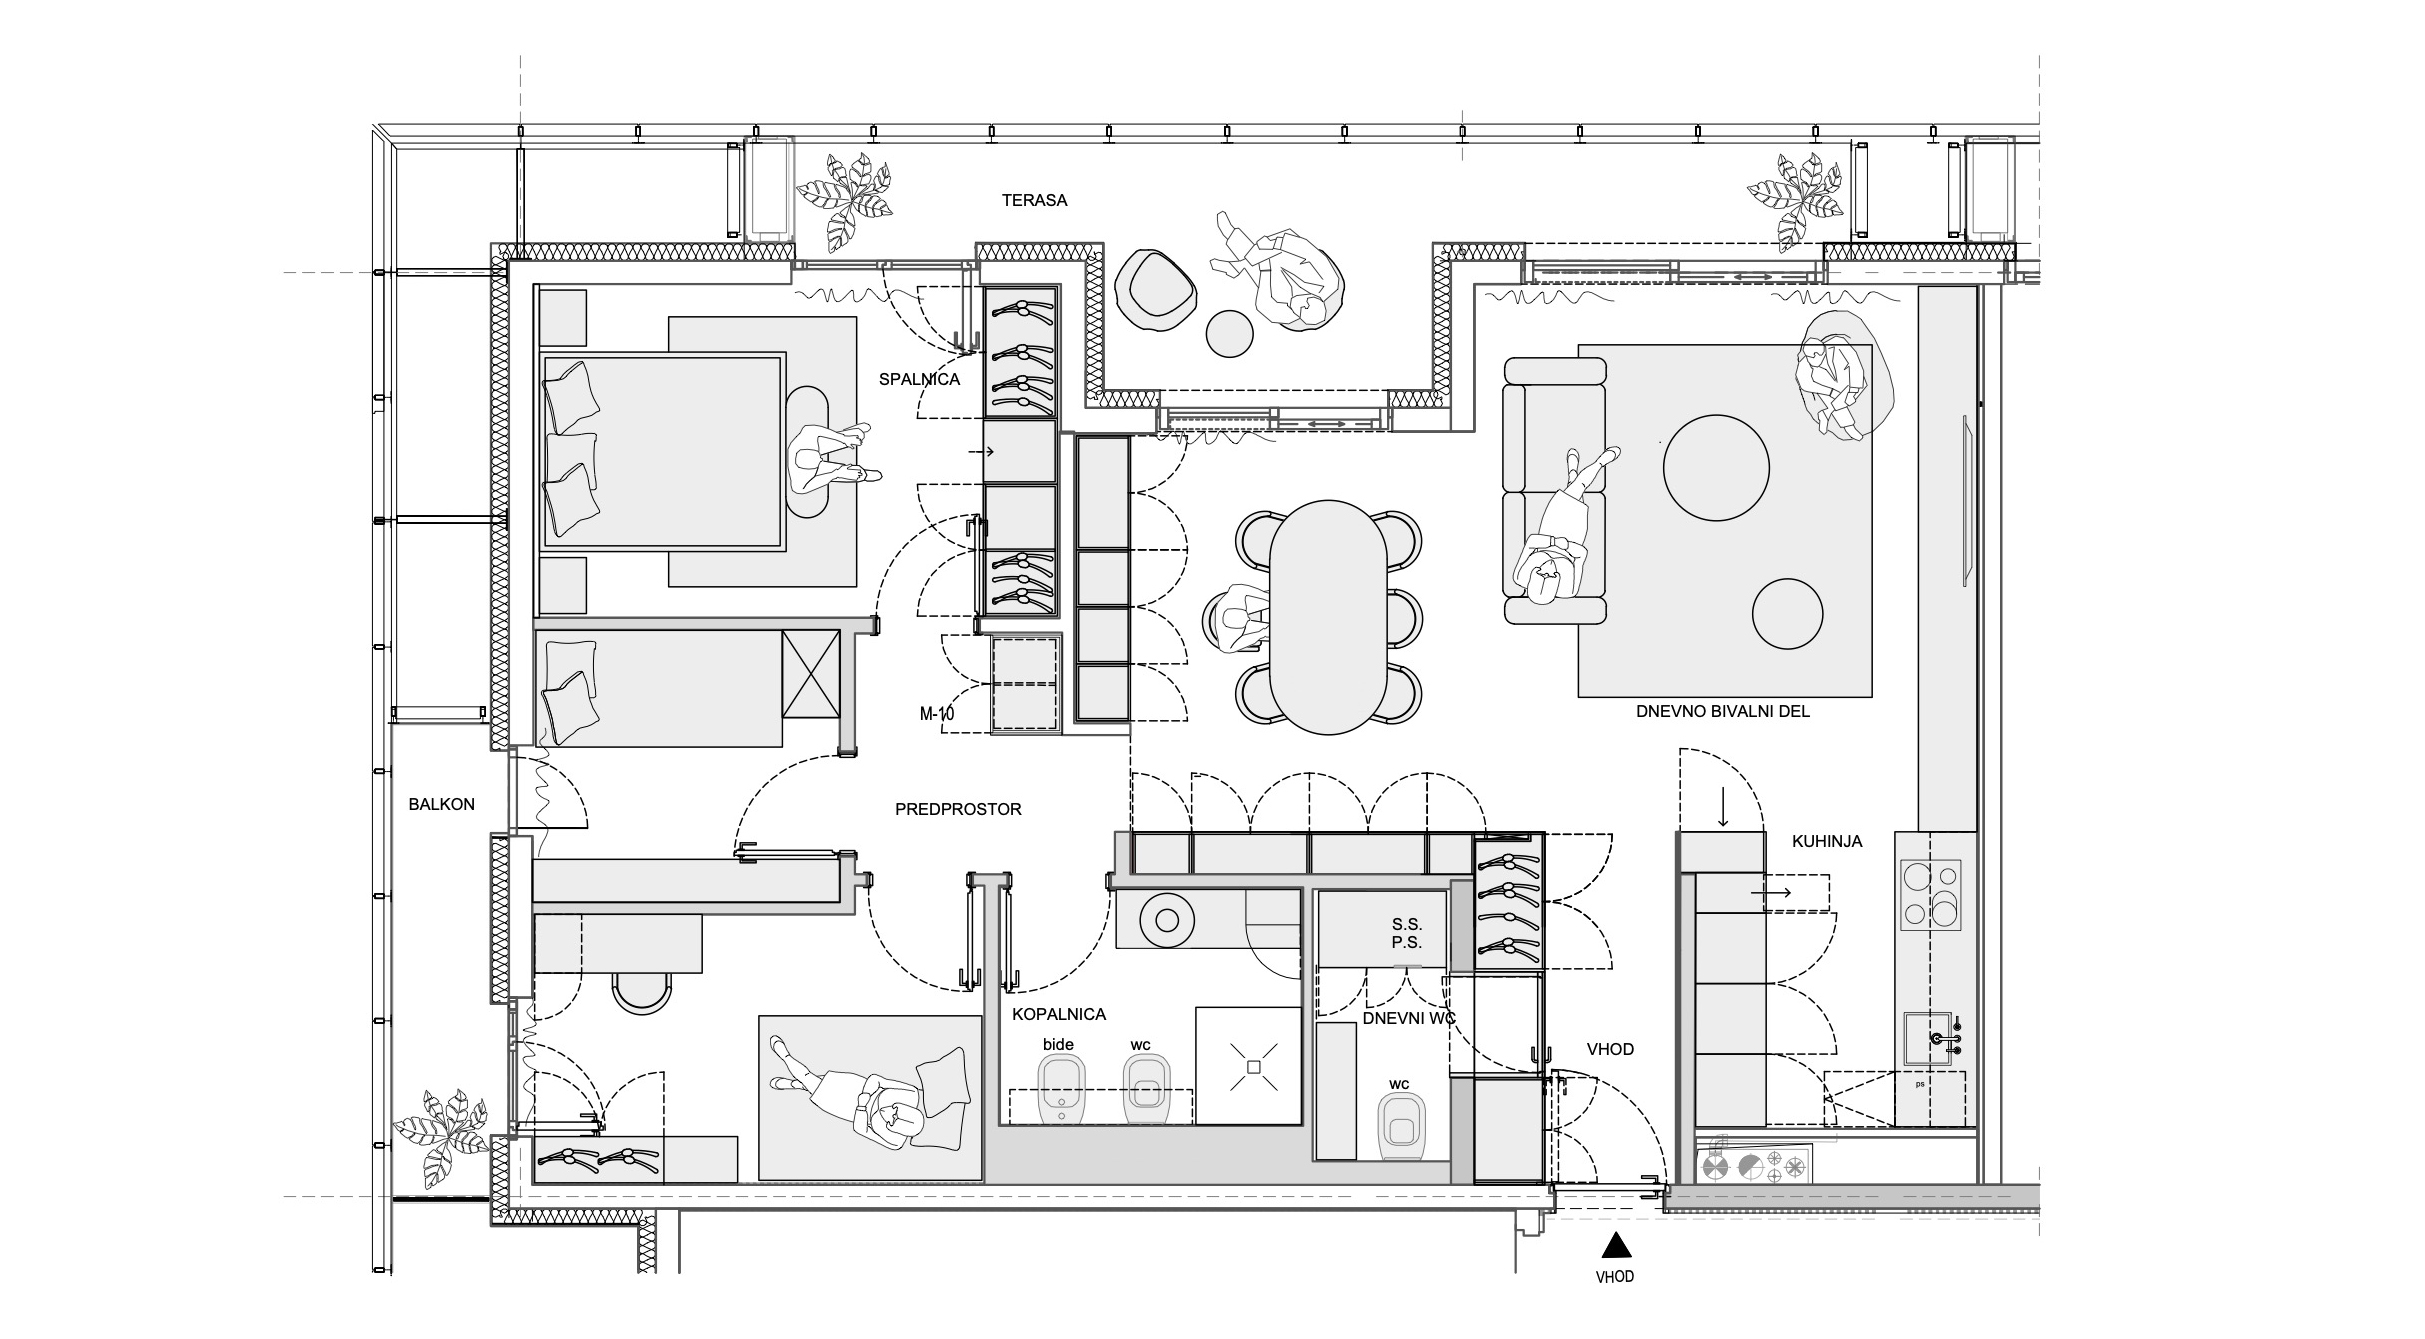 Prostornina | Memory lane, Family home interior design | Floor plan